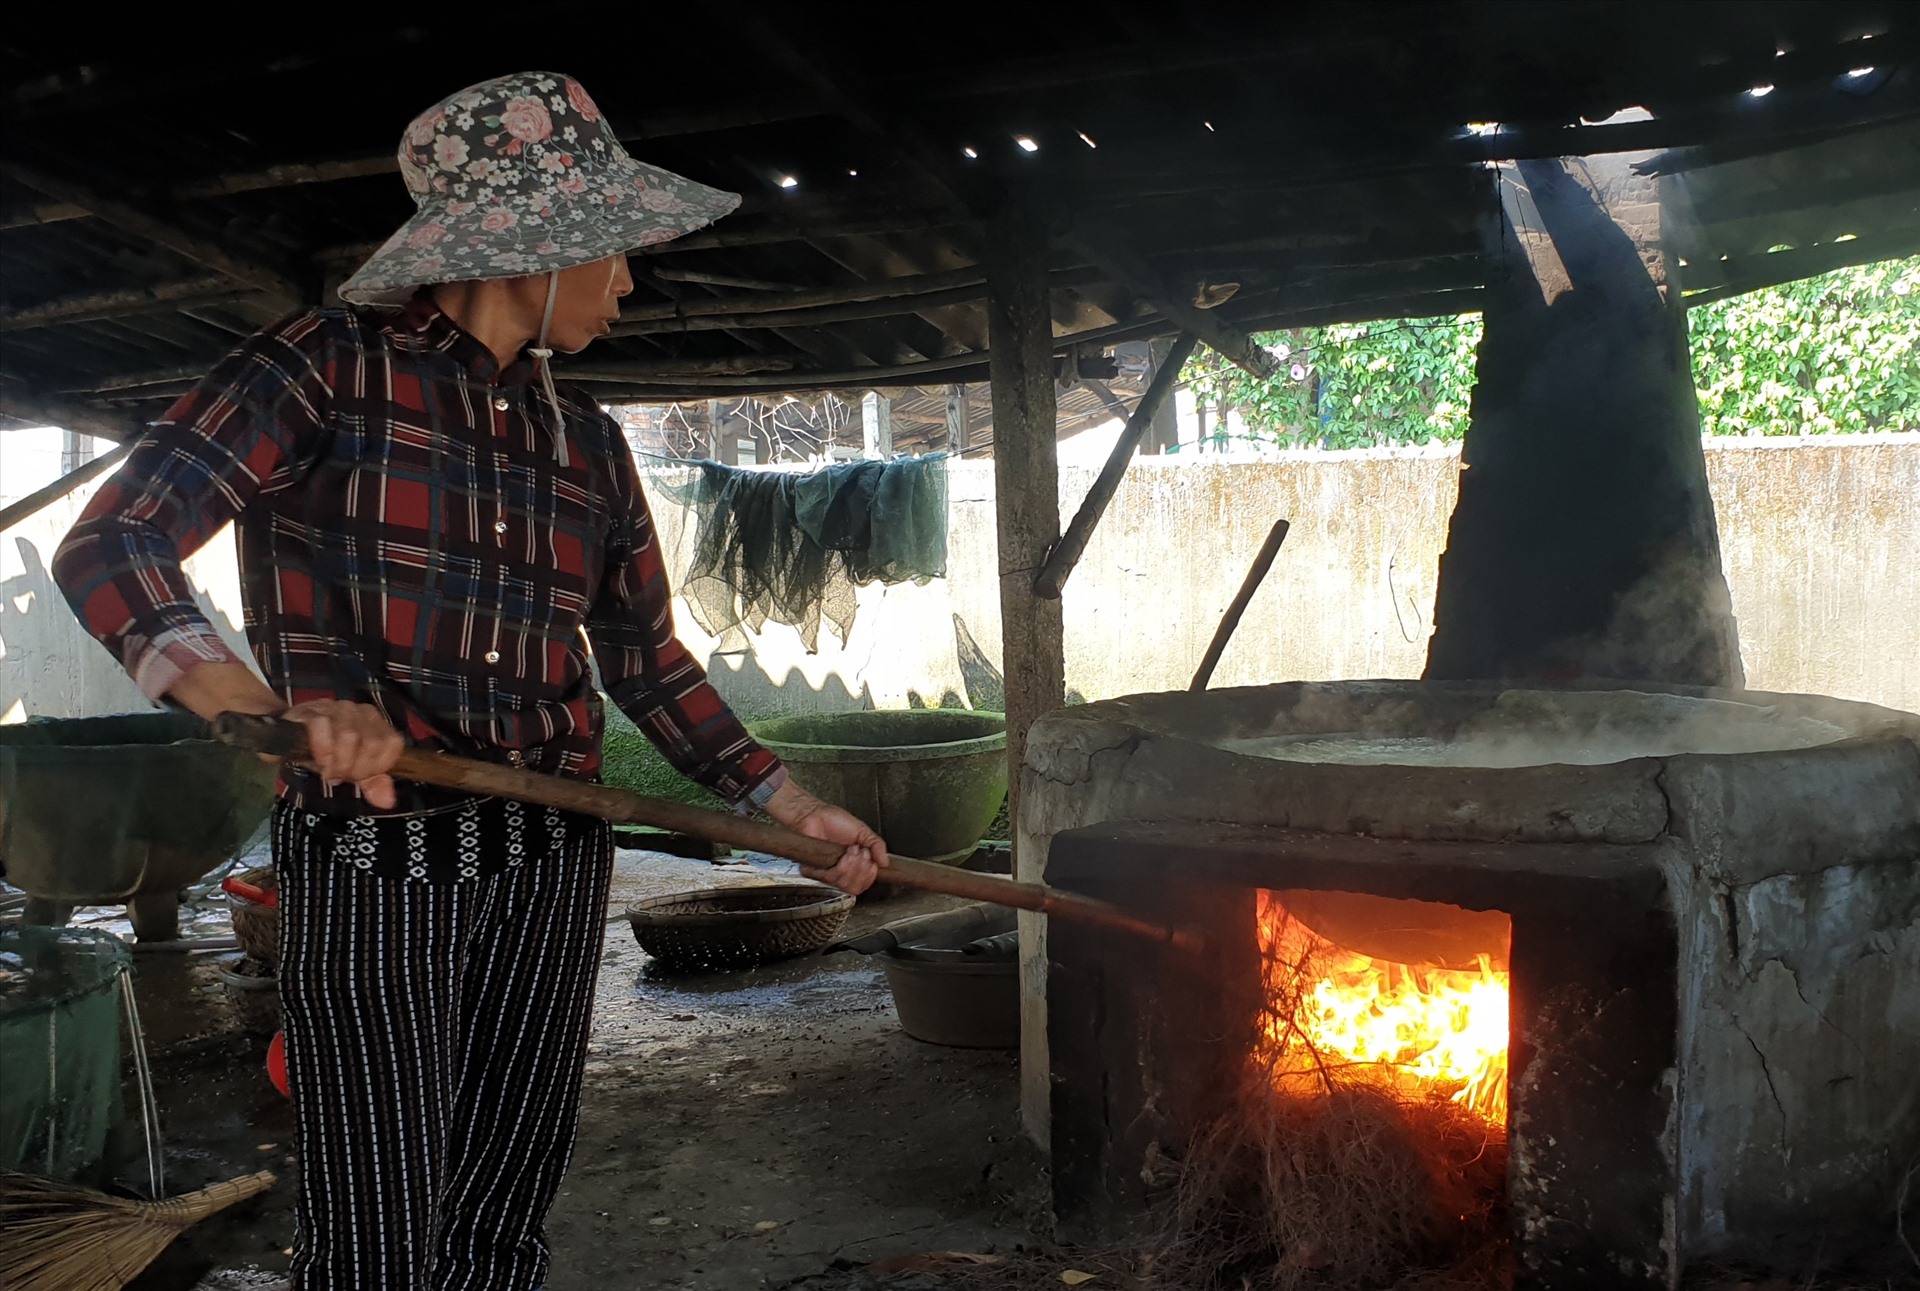 Hiện nay, thôn Tân Phú có khoảng 200 hộ gia đình theo nghề cào, 7 cơ sở trực tiếp sản xuất hến ra thị trường. Các cơ sở ở đây hoạt động theo hình thức nhỏ lẻ, sử dụng nguyên liệu chính là hến tươi cào dưới sông lên chế biến theo phương thức truyền thống từ lâu đời.